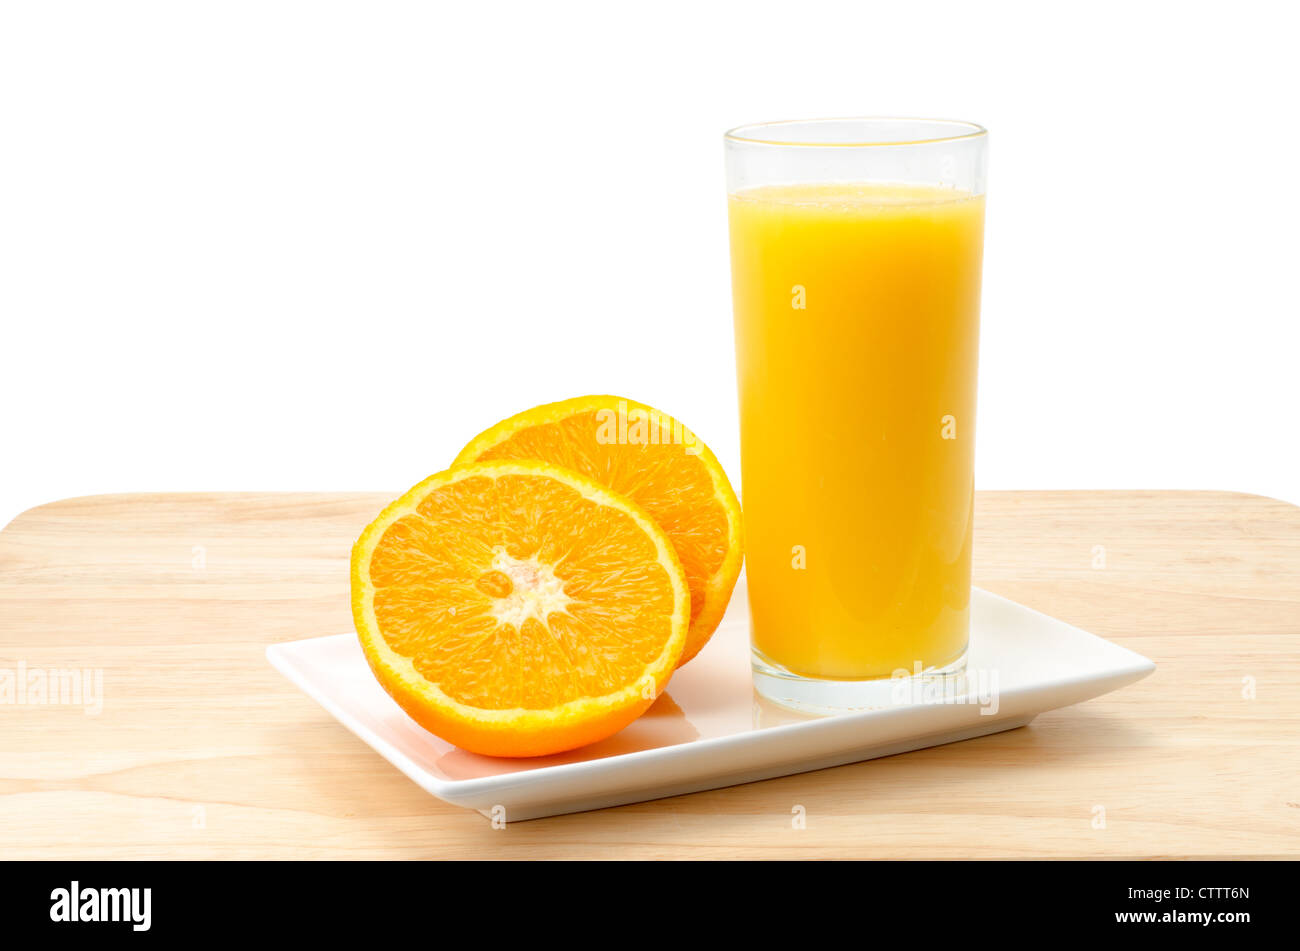 Spremuta di arancia fresca con un arancio che è stato tagliato a metà - studio shot con un semplice sfondo bianco Foto Stock